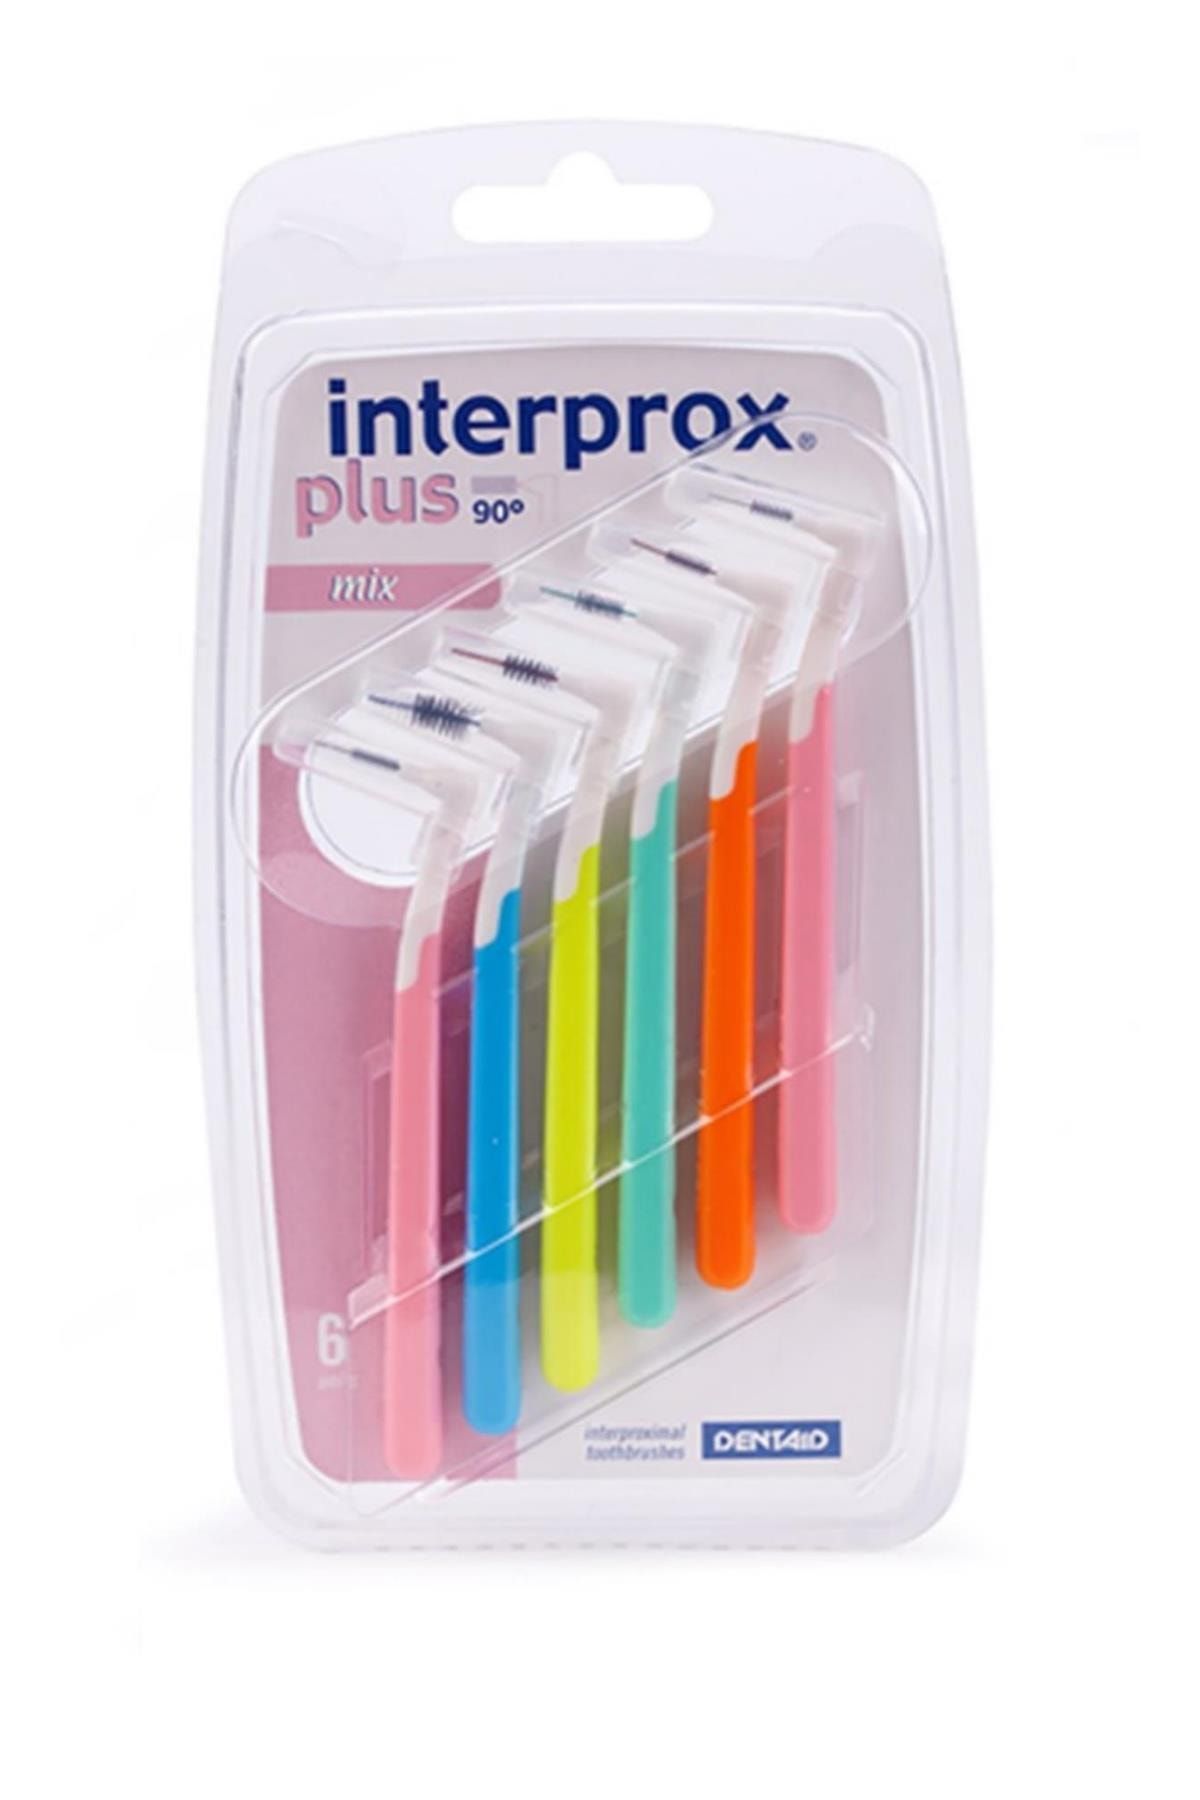 İnterprox Plus 2g Mix Blister 6'lı (KARIŞIK SET) Arayüz Fırçası